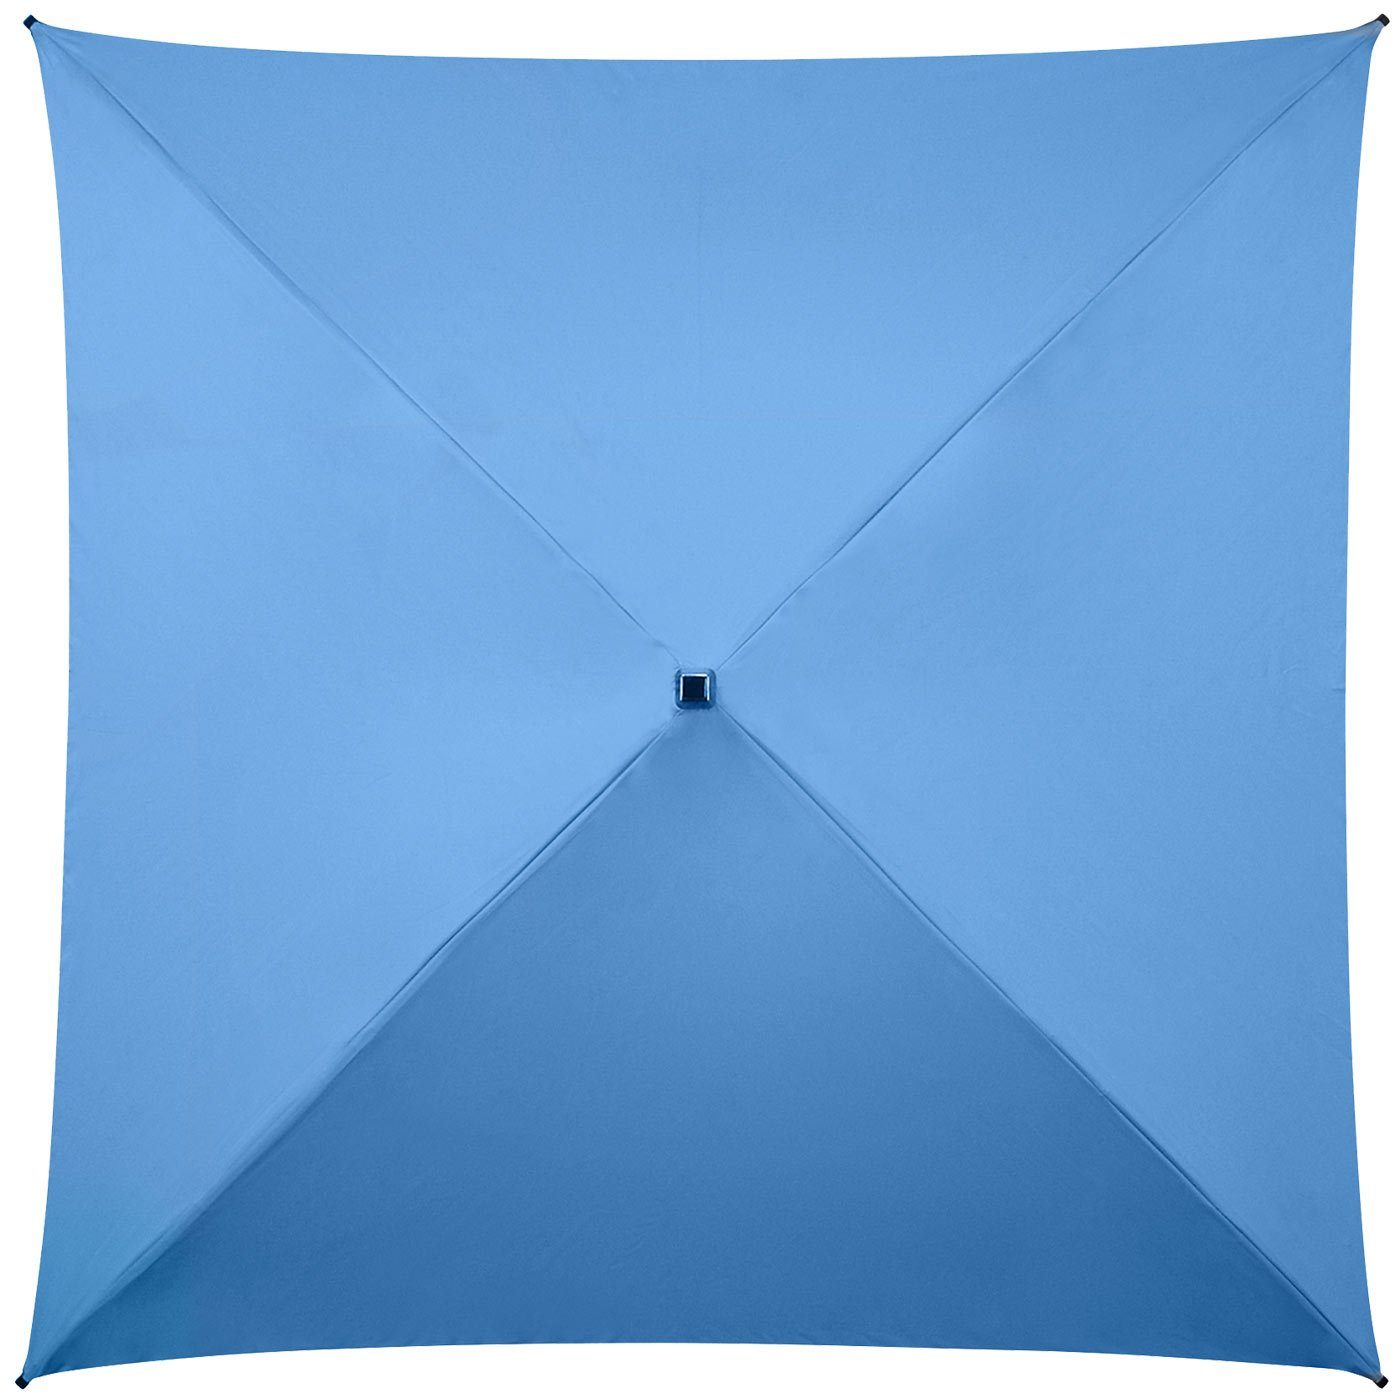 Impliva Langregenschirm All der ganz Regenschirm voll Square® besondere quadratischer hellblau Regenschirm